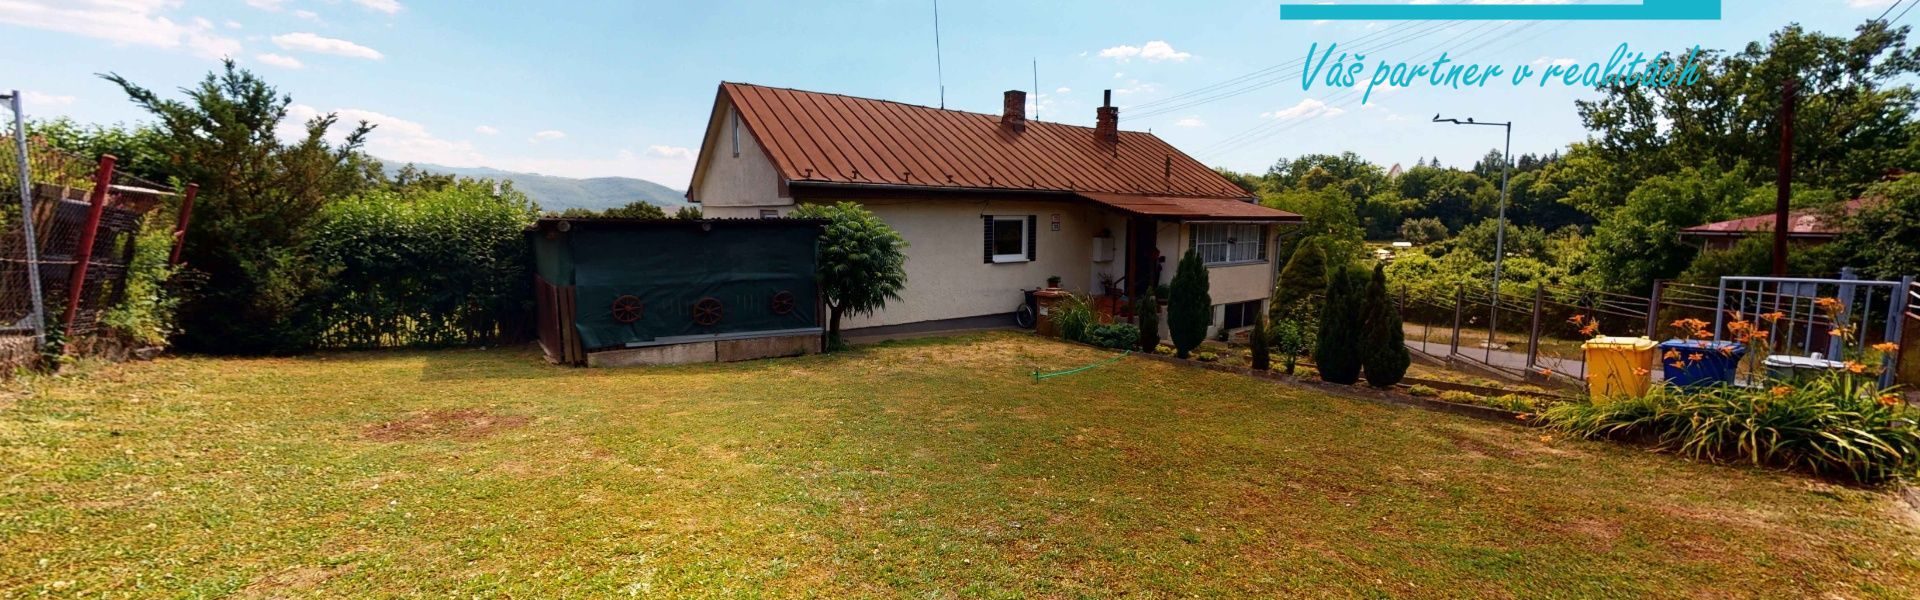 Predaj rodinného domu 140 m2 so záhradou na pozemku 814 m2 v Žiari nad Hronom.